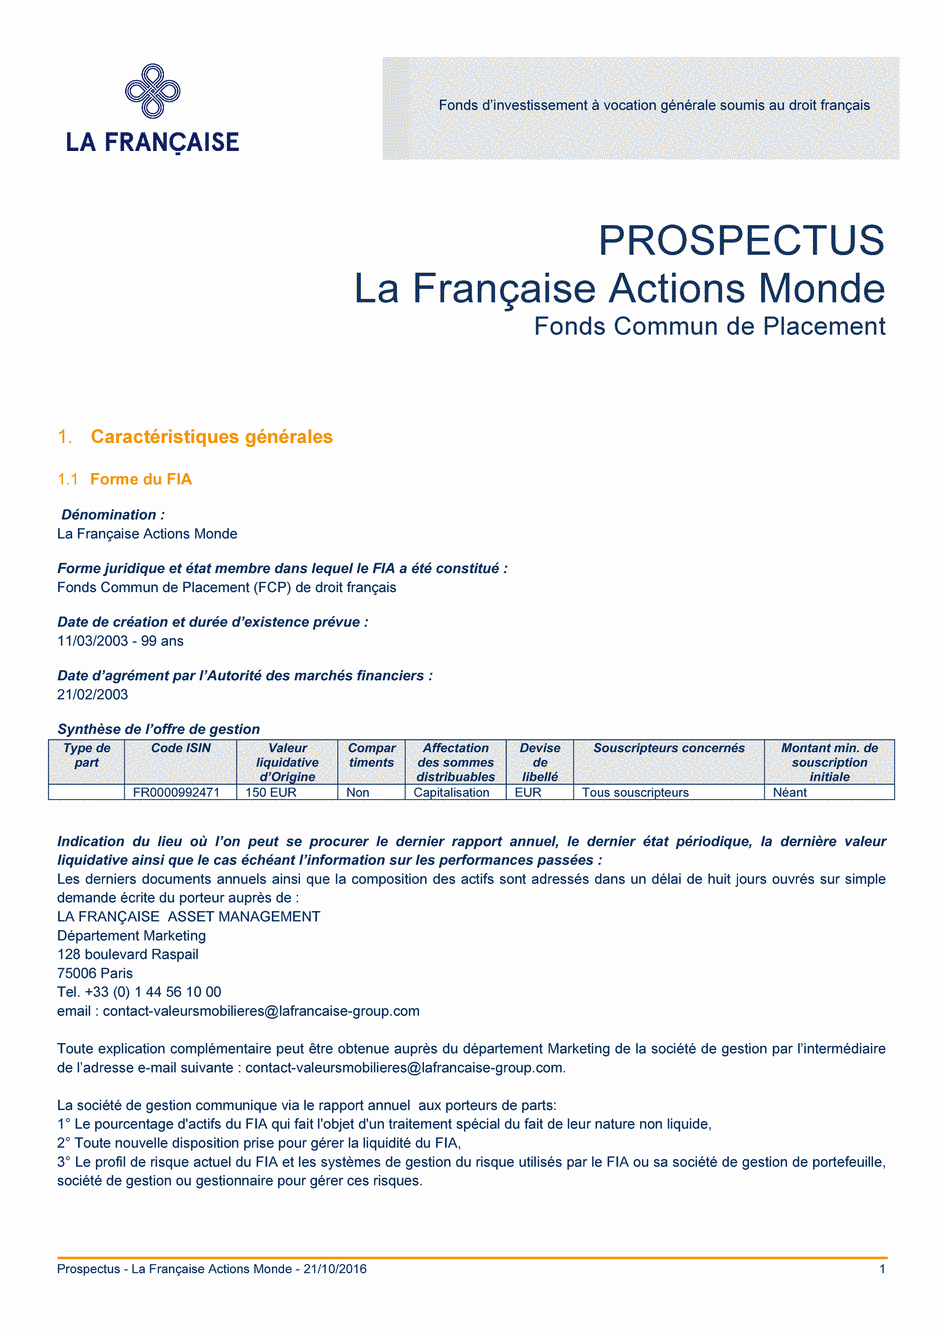 Prospectus LA FRANCAISE ACTIONS MONDE (C) - 21/10/2016 - Français